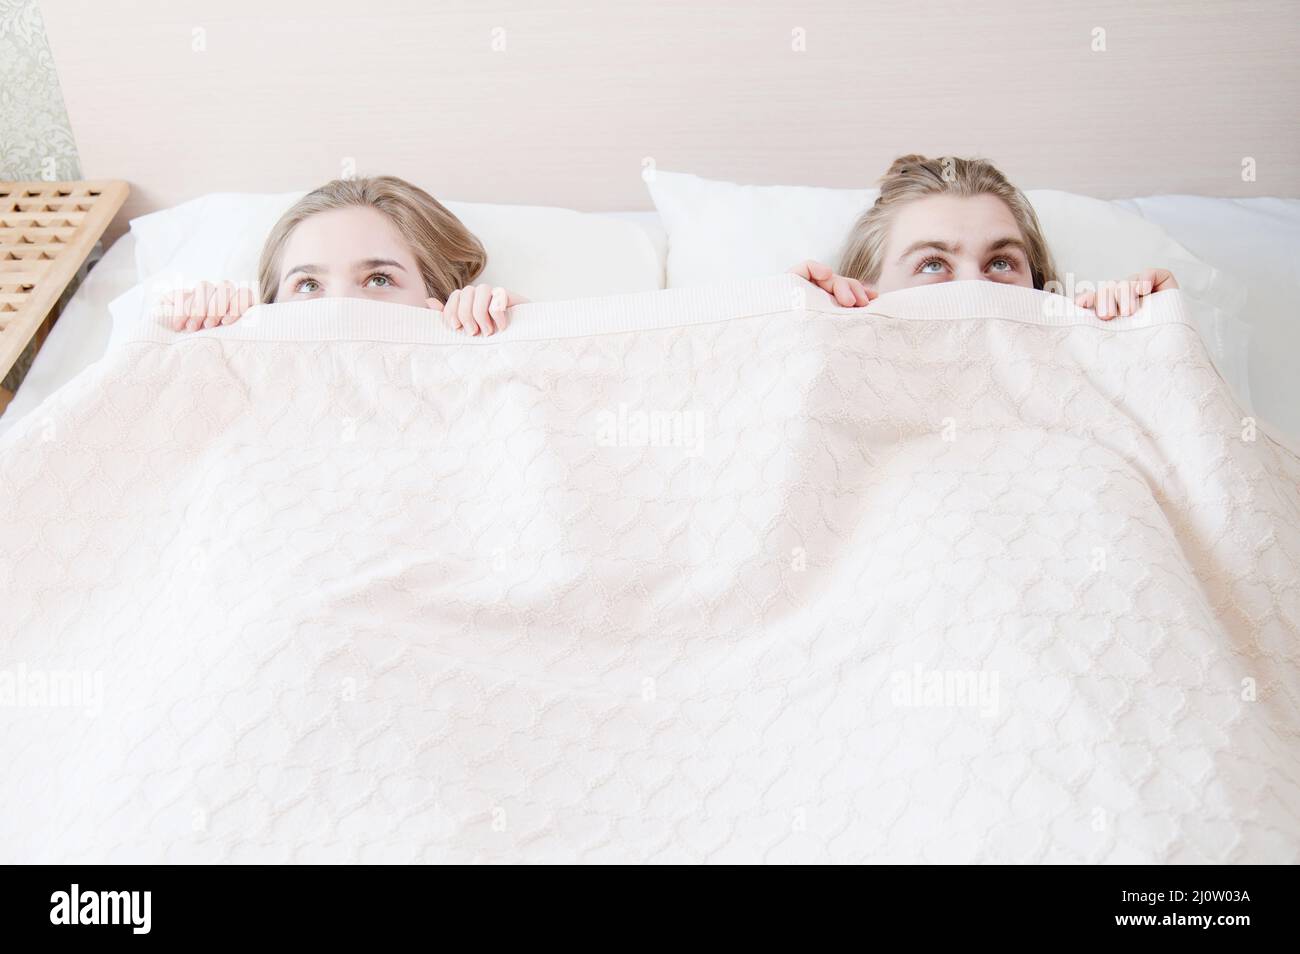 Un jeune couple au lit couvre la moitié de son visage avec une couverture se cachant et se cachant derrière une couverture. Le concept de la famille libre p Banque D'Images